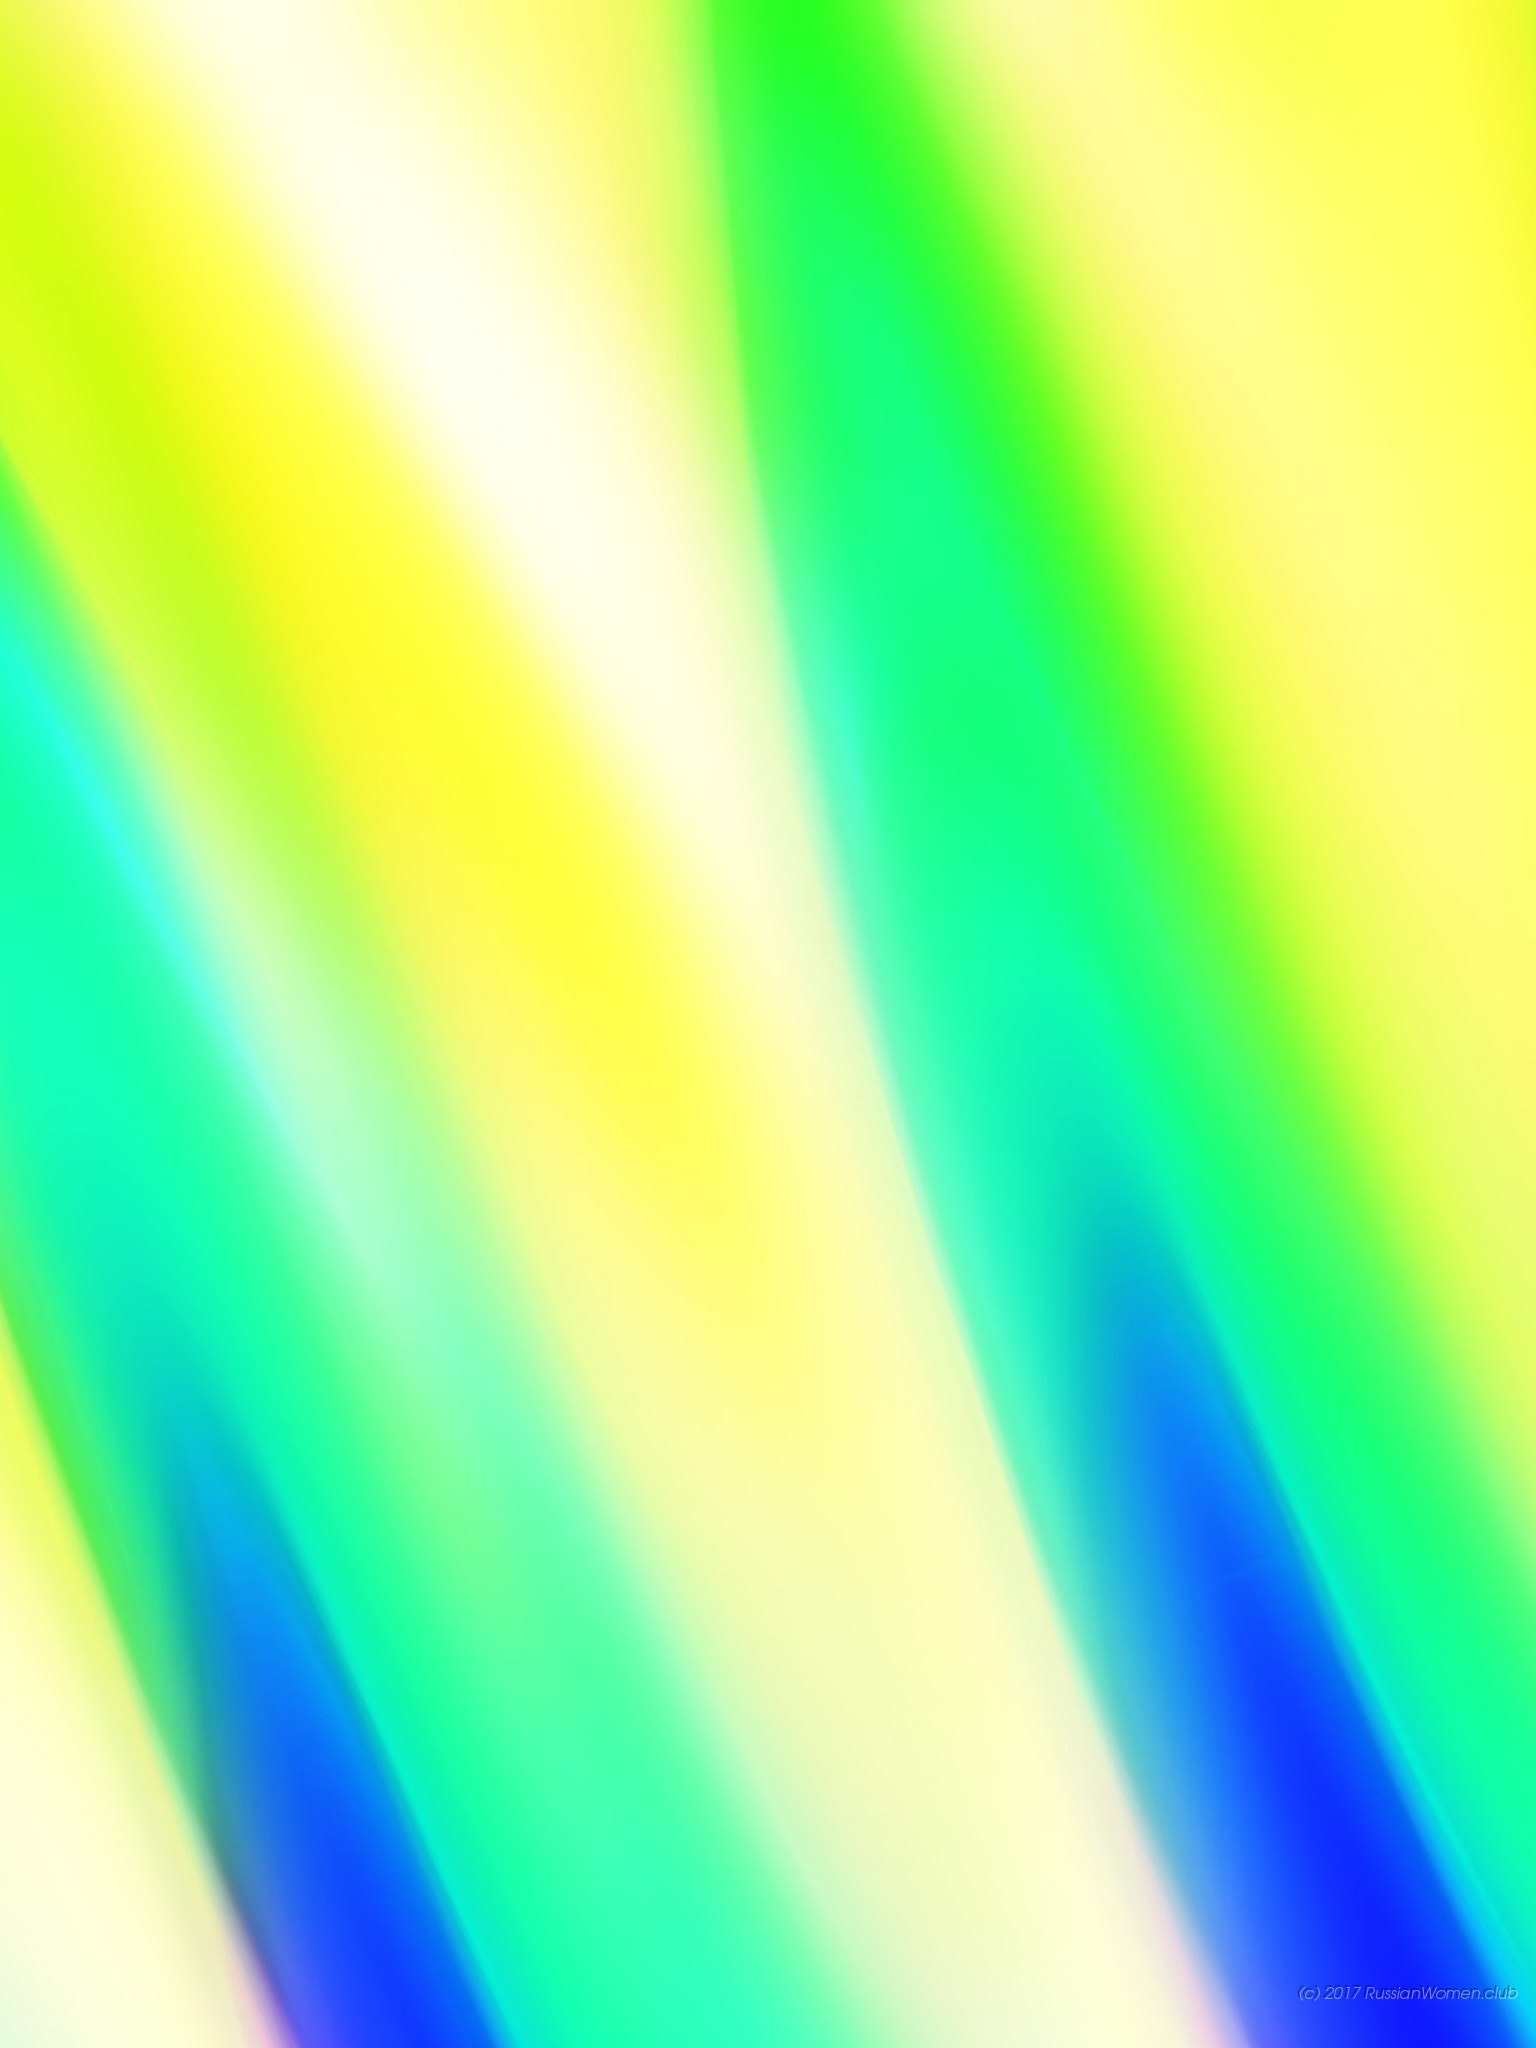 nokia 220 wallpaper,blau,grün,gelb,licht,aqua